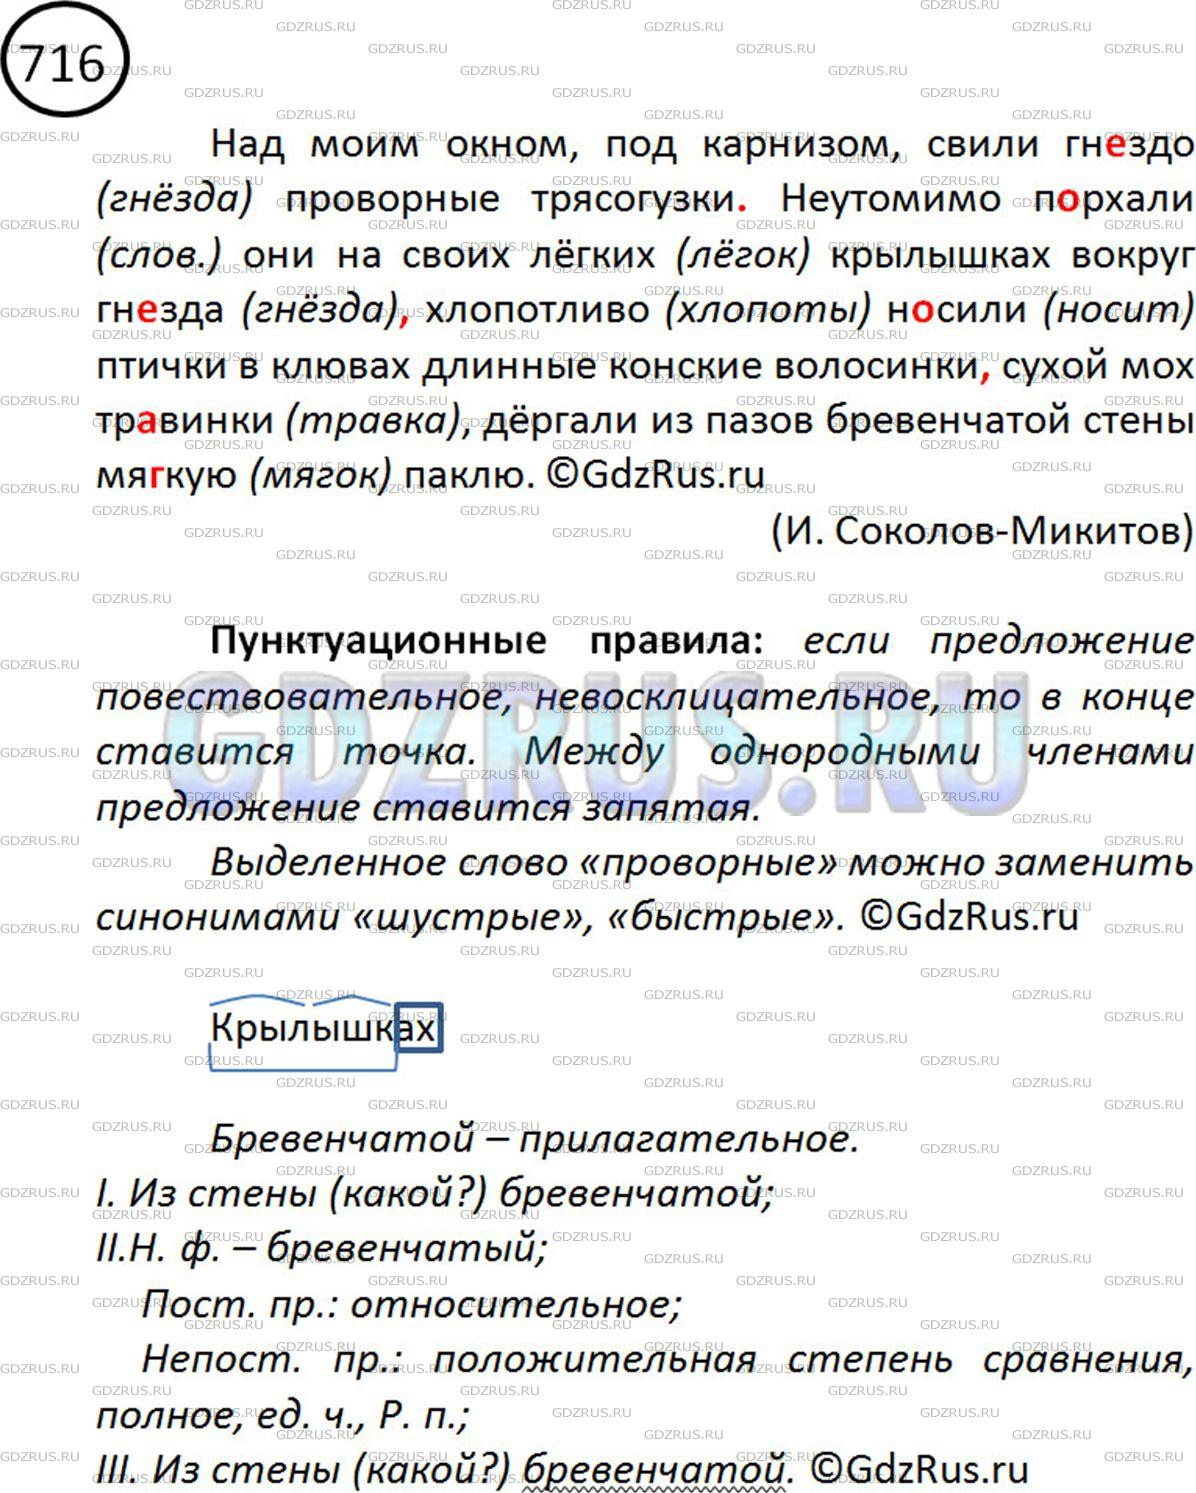 Фото решения 2: ГДЗ по Русскому языку 5 класса: Ладыженская Упр. 716